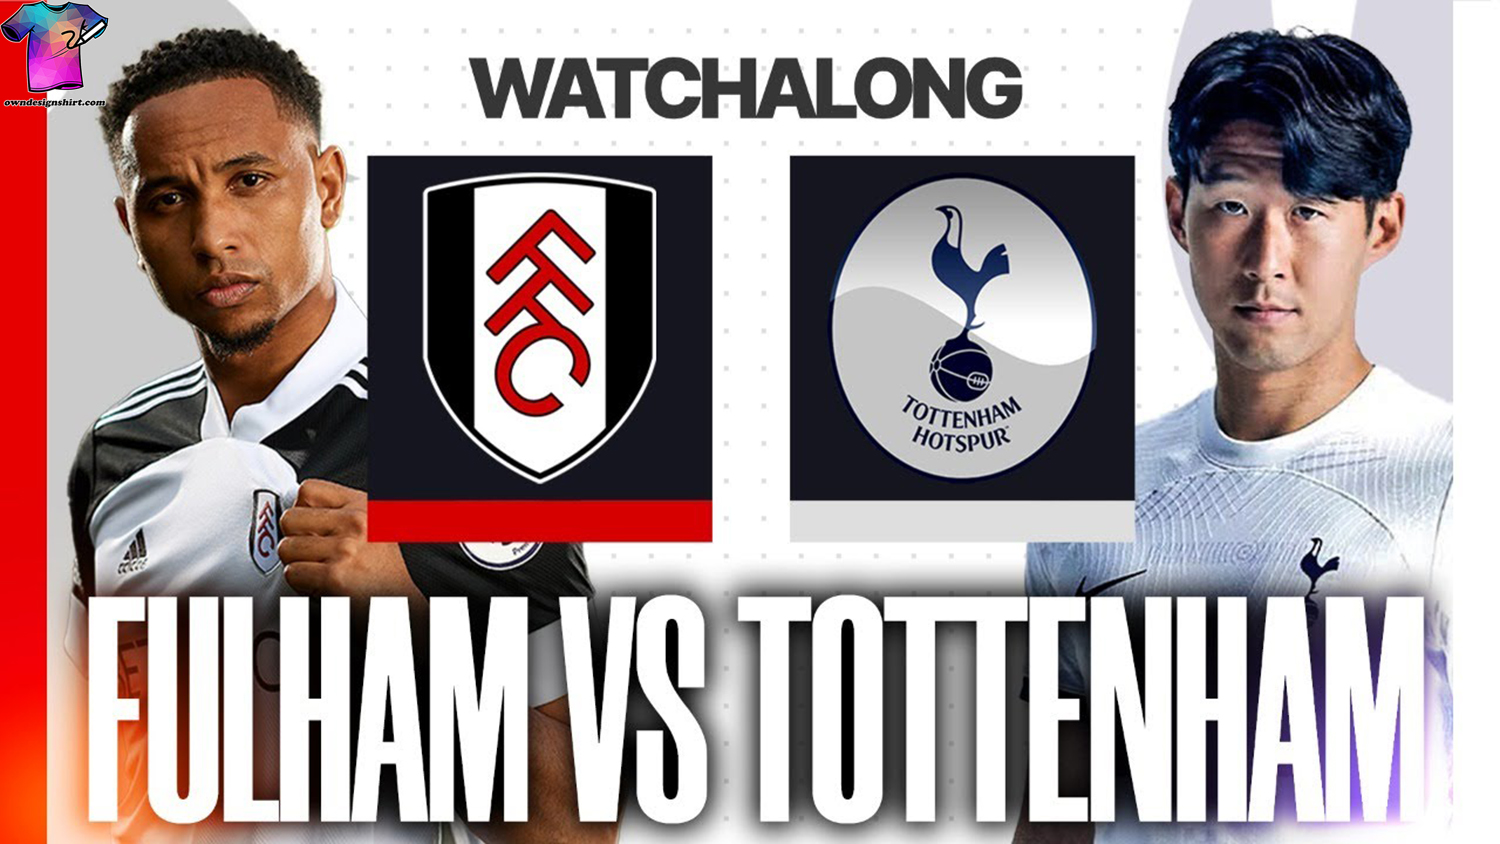 Fulham vs Tottenham Hotspur A Premier League Clash for Crucial Points at Craven Cottage